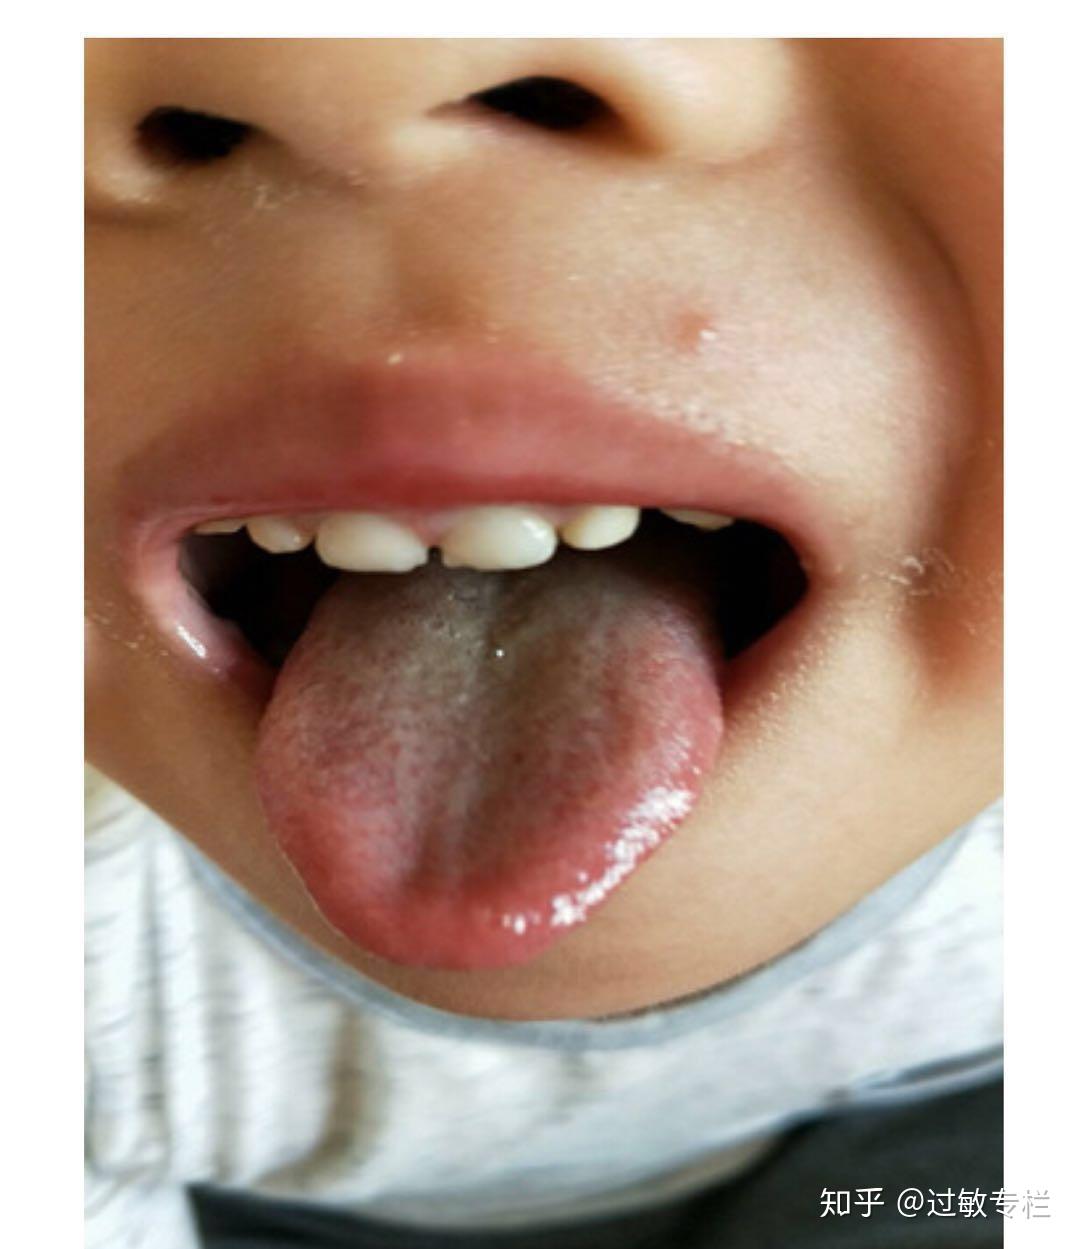 小孩肺热舌苔图片图片